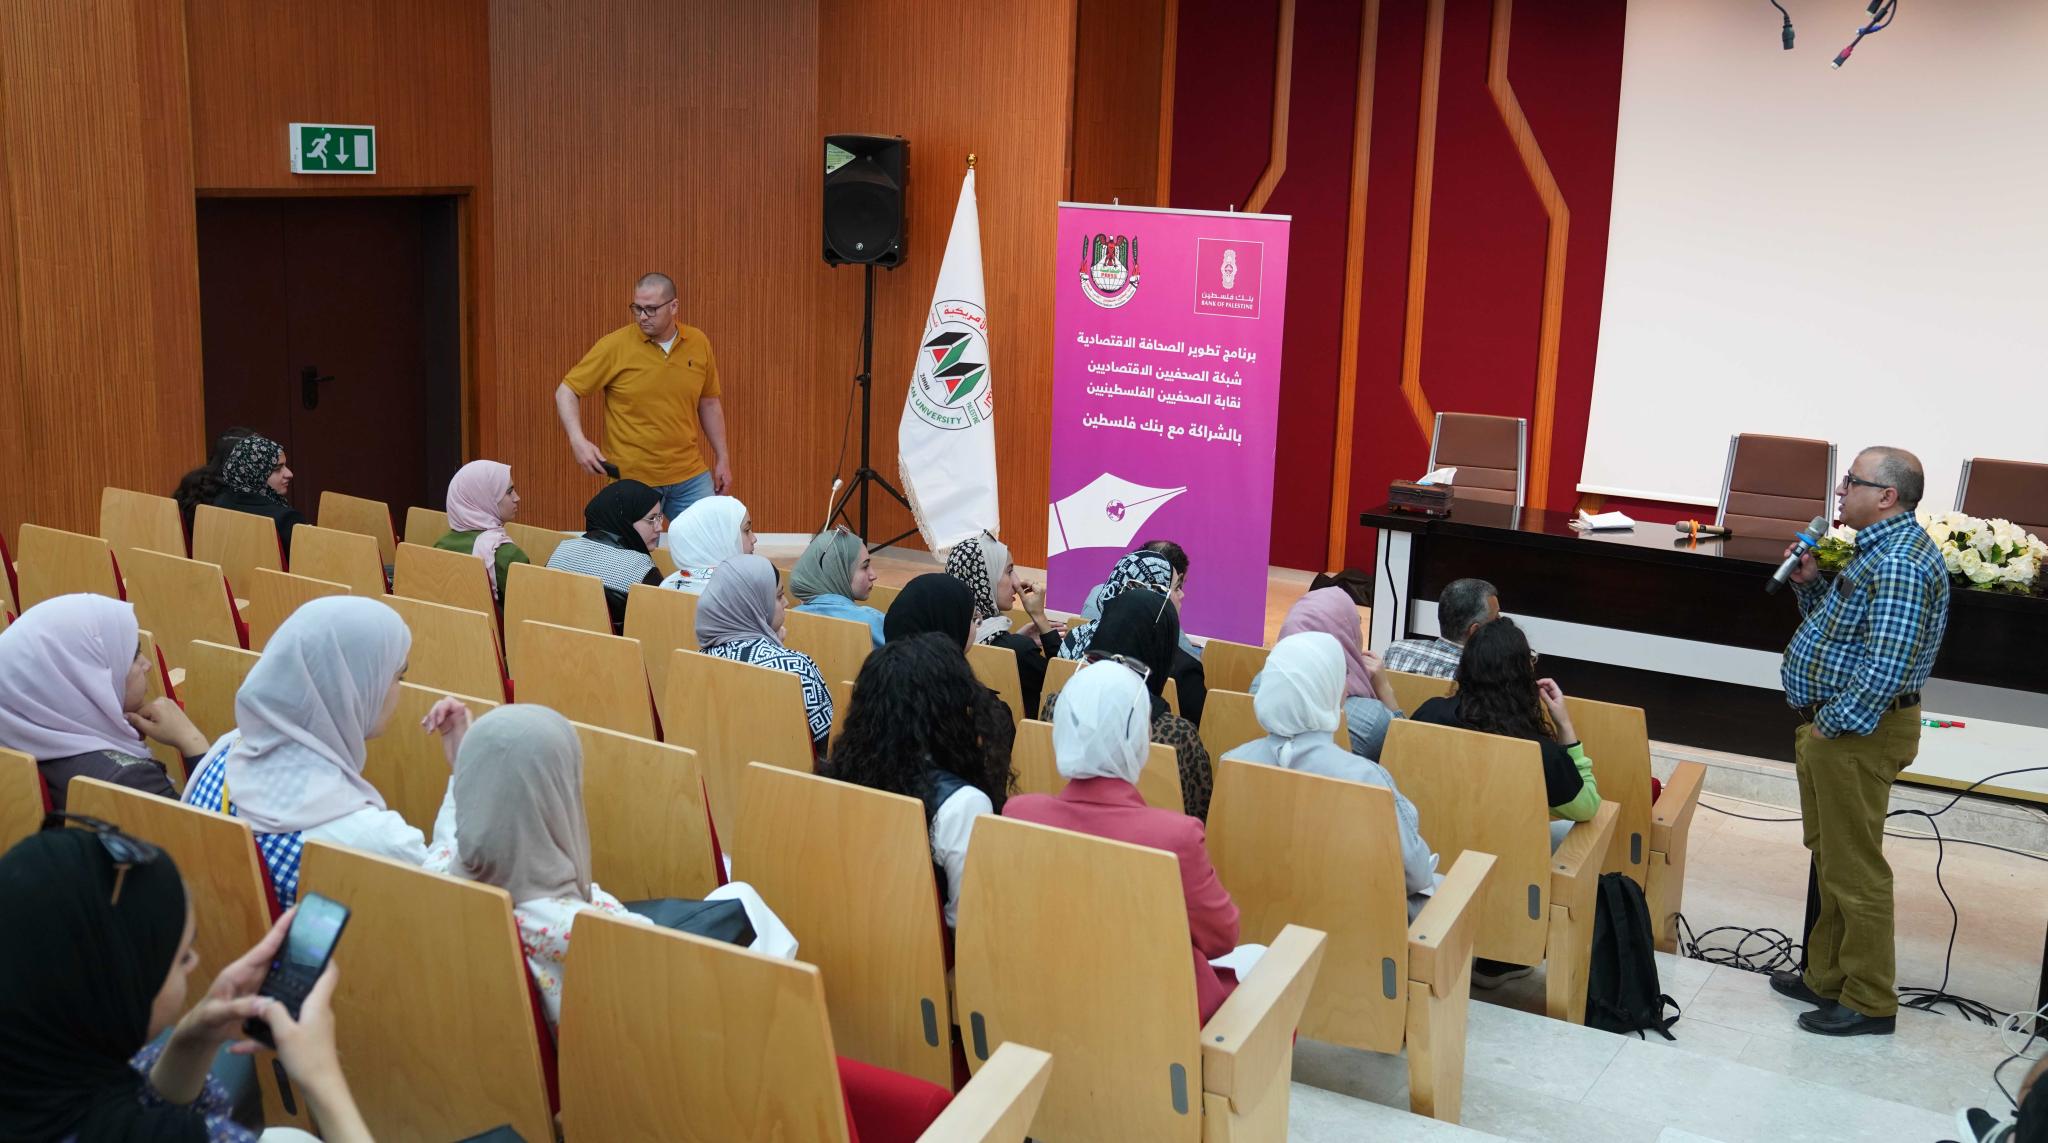 الجامعة تنظم لقاء تدريبيا لطلبة قسم اللغة العربية والإعلام حول مبادئ الصحافة الاقتصادية